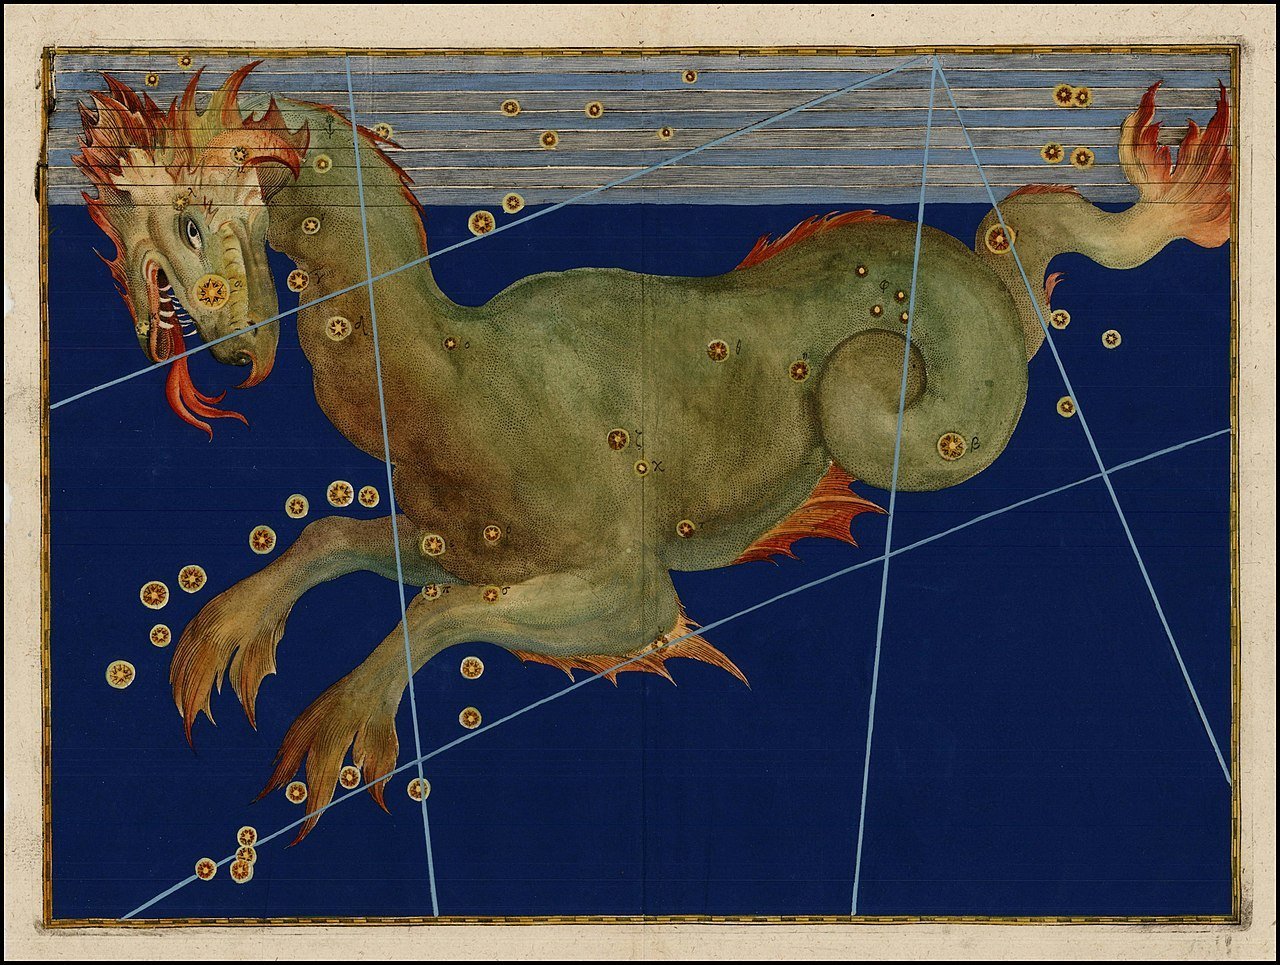 Cetus: Monster wa Bahari ya Astronomia ya Kigiriki